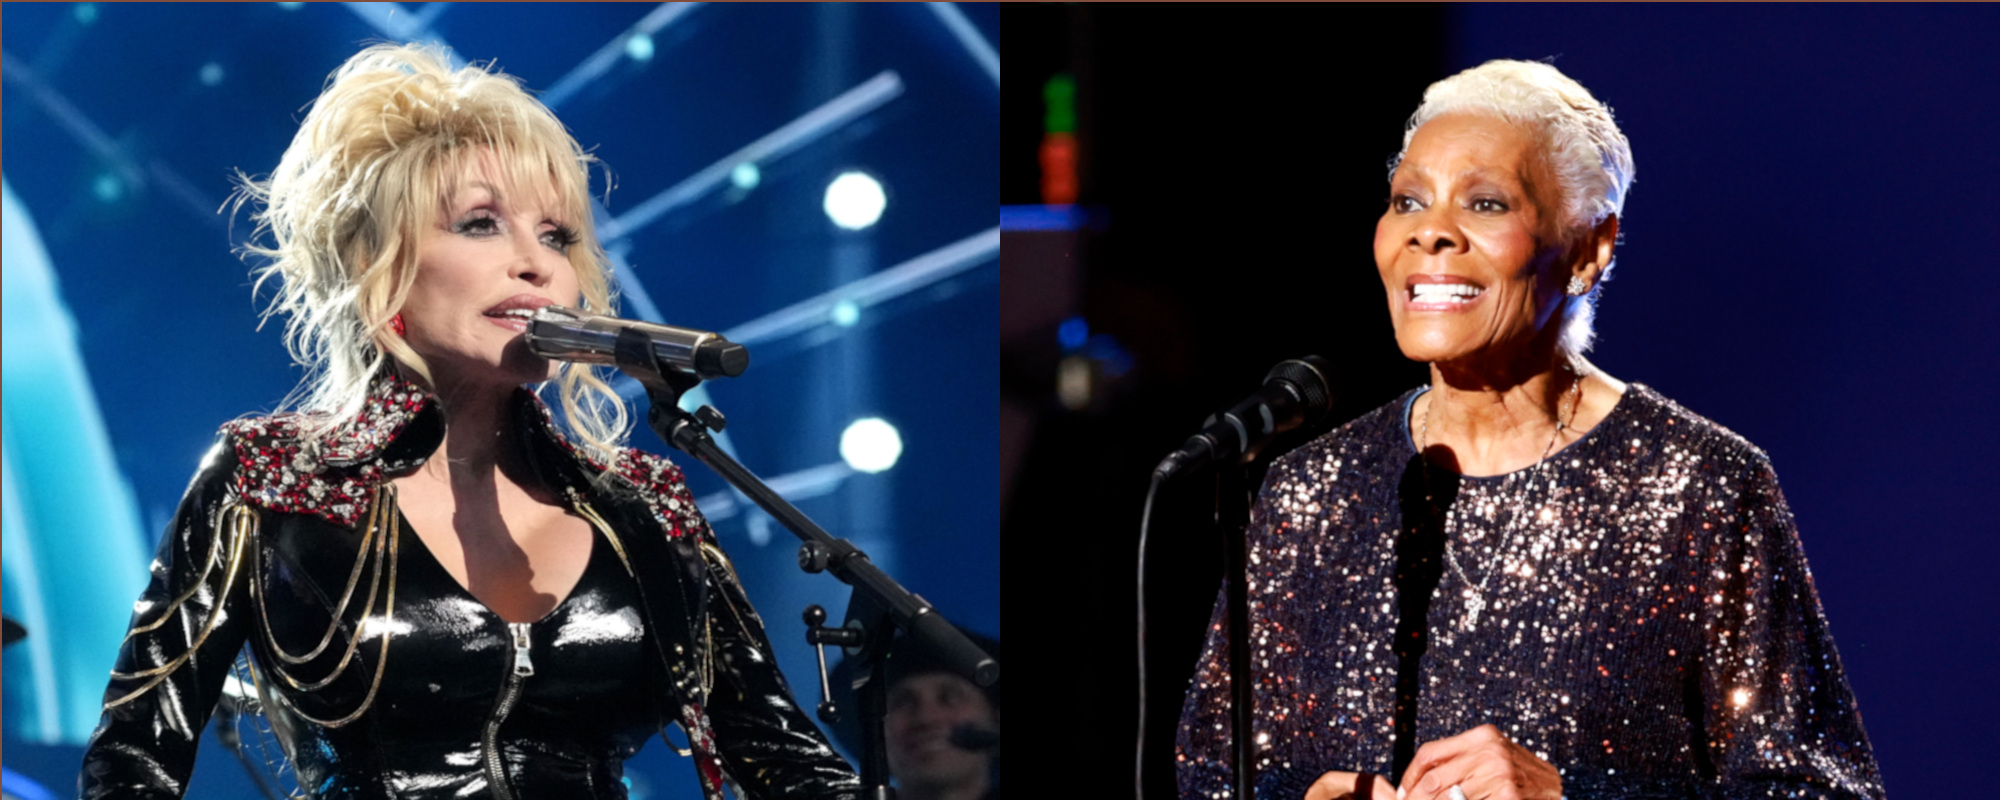 Dionne Warwick, Dolly Parton Release Gospel Duet “Peace Like a River”